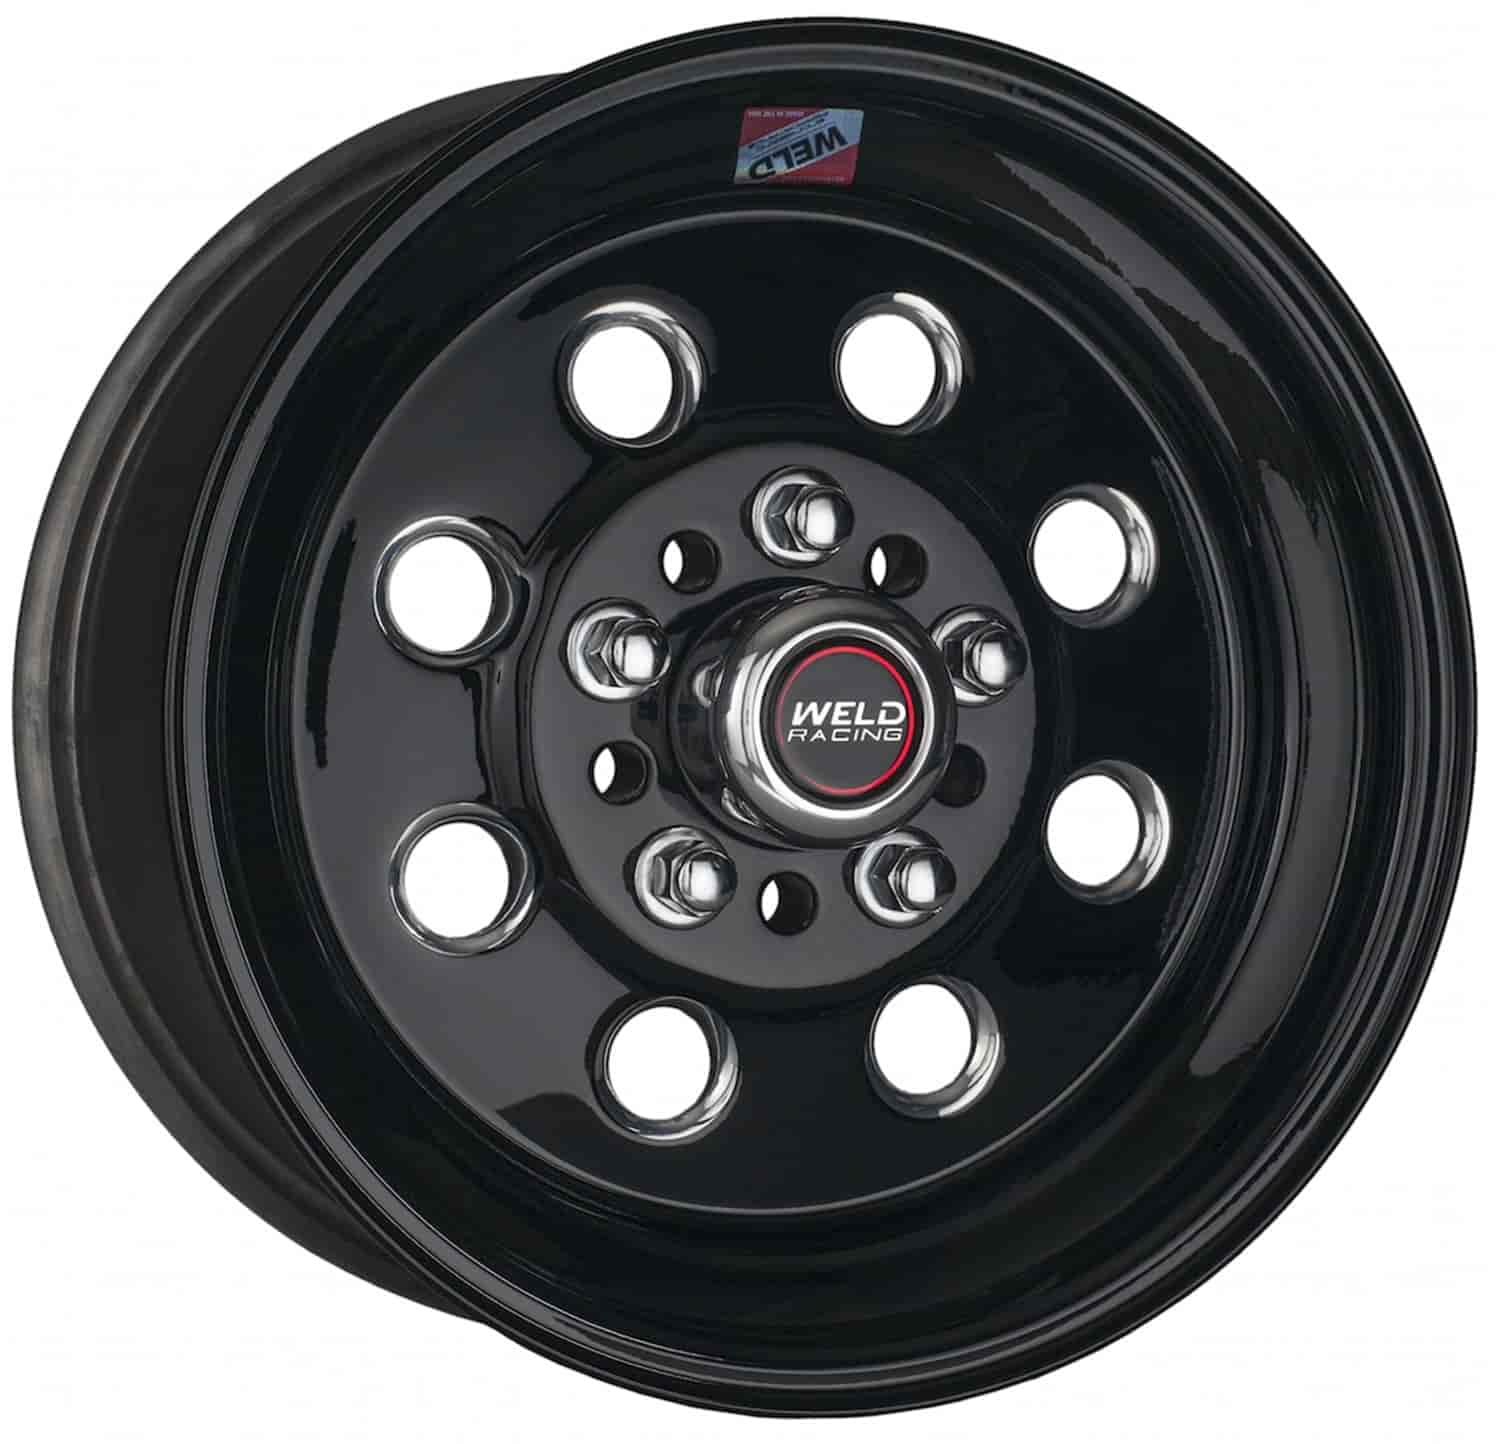 Sport Forged Draglite Black Wheel 4 Lug 4.5 RS